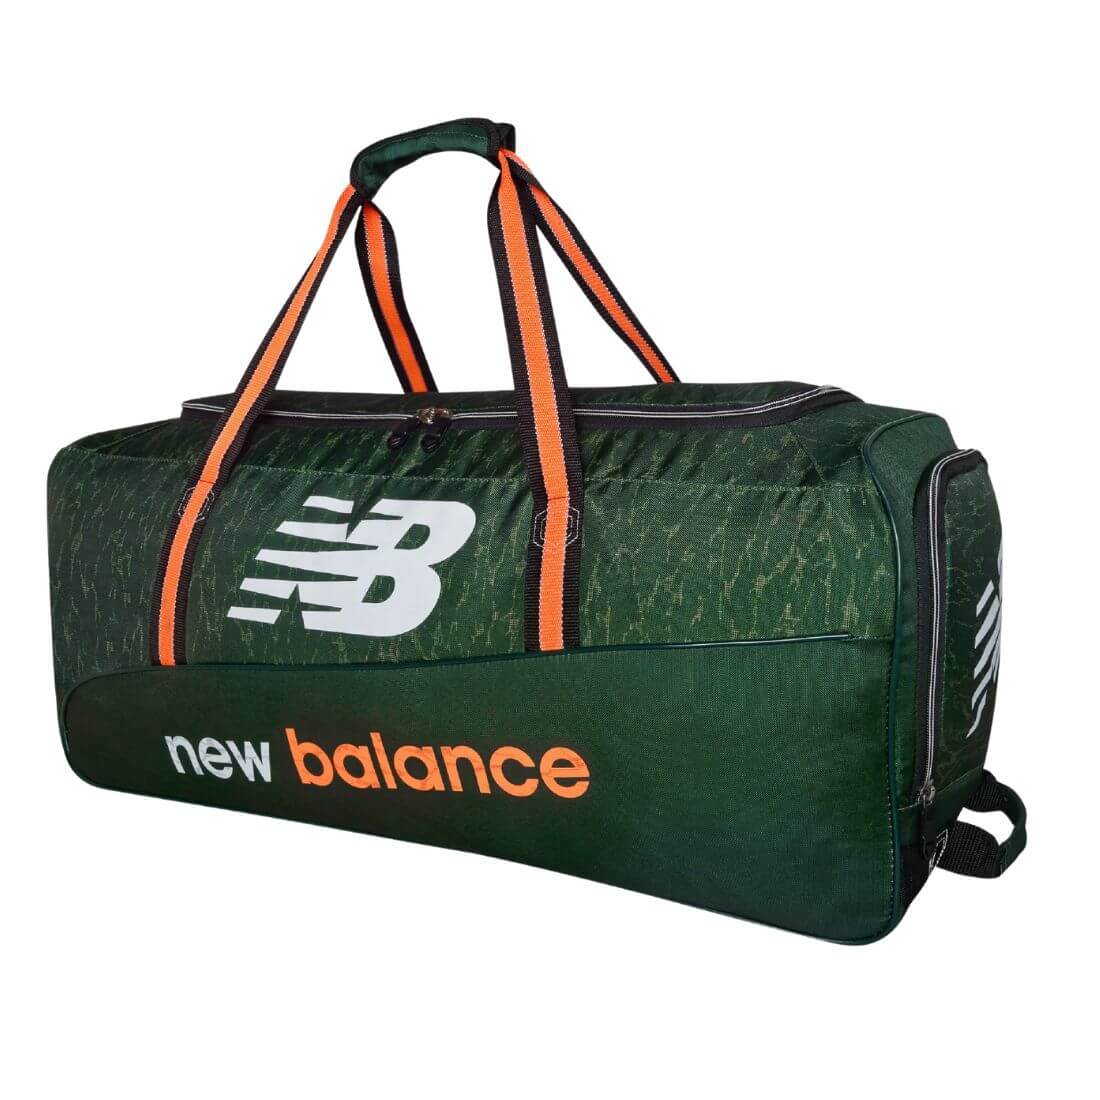 New Balance Bag